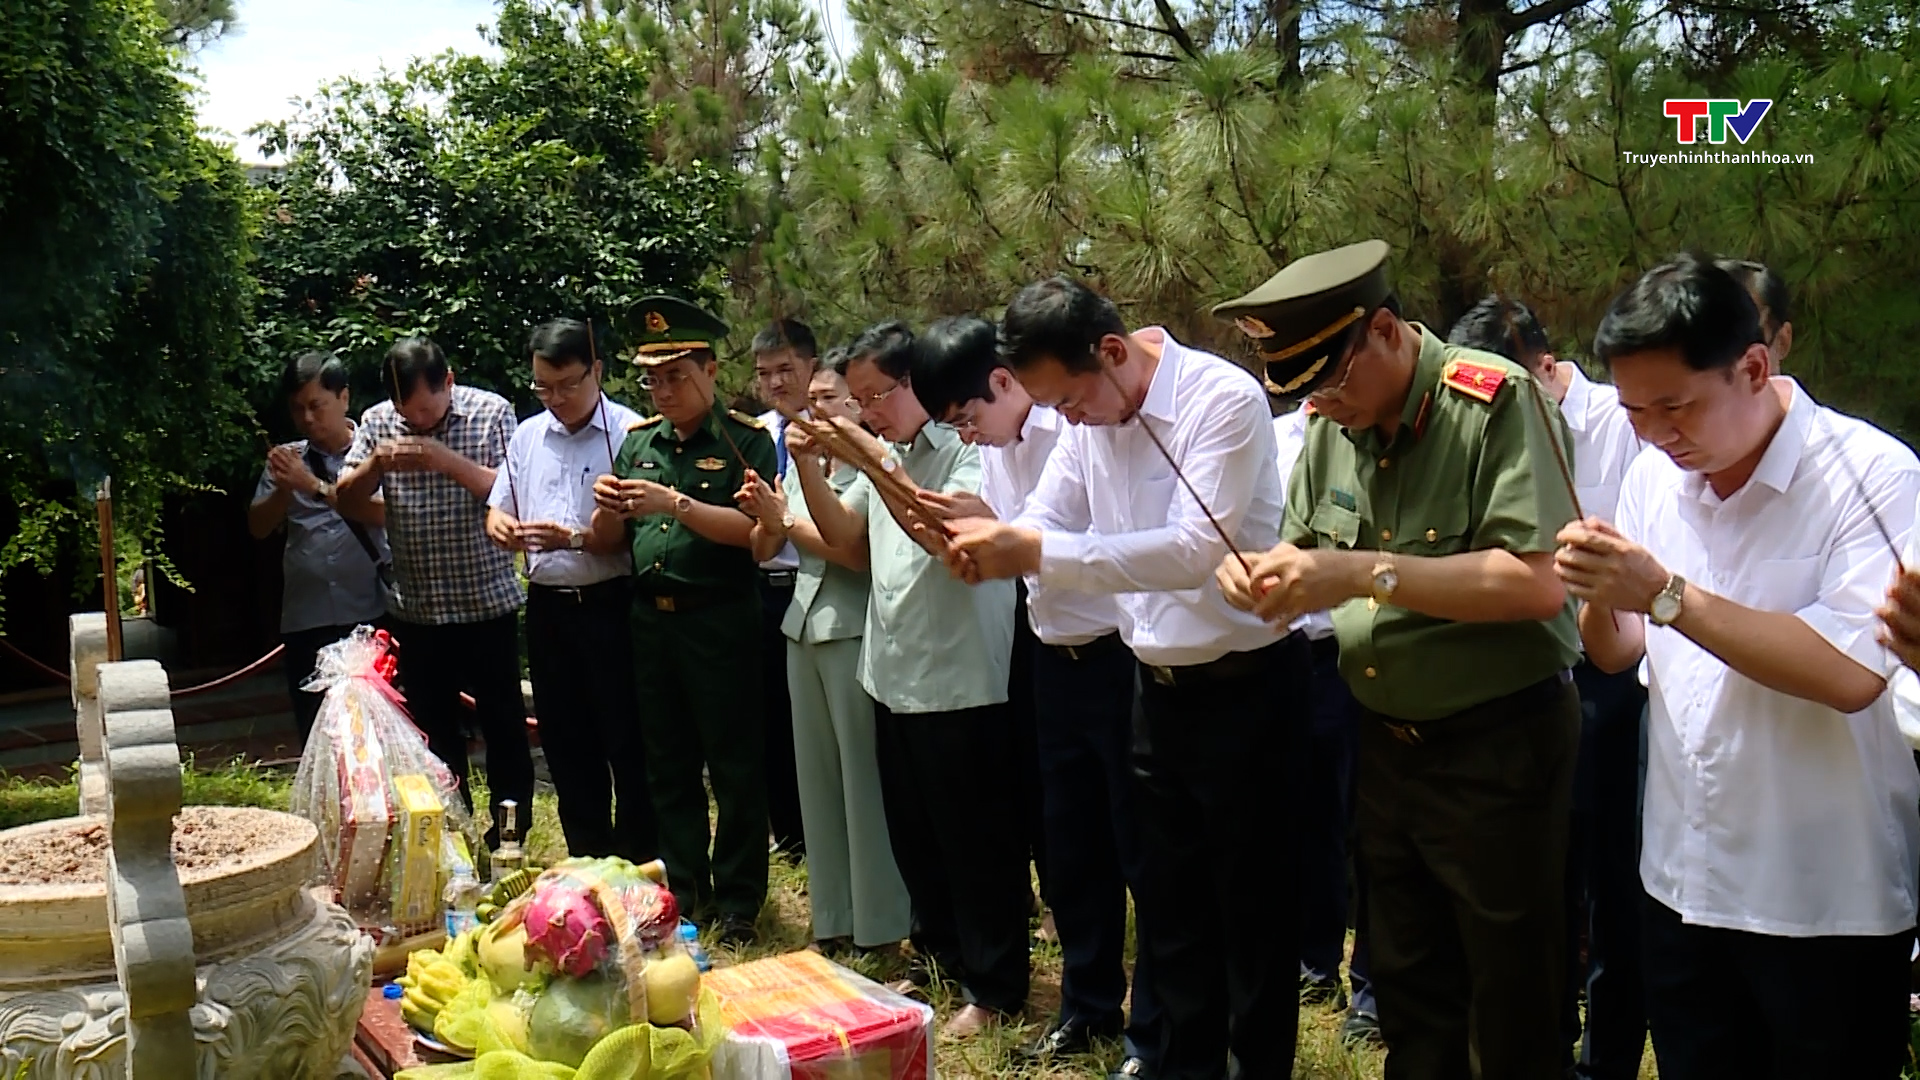 Đồng chí Phó Bí thư Tỉnh ủy Trịnh Tuấn Sinh dâng hương các liệt sỹ đang yên nghỉ tại Quảng Bình và Quảng Trị- Ảnh 1.